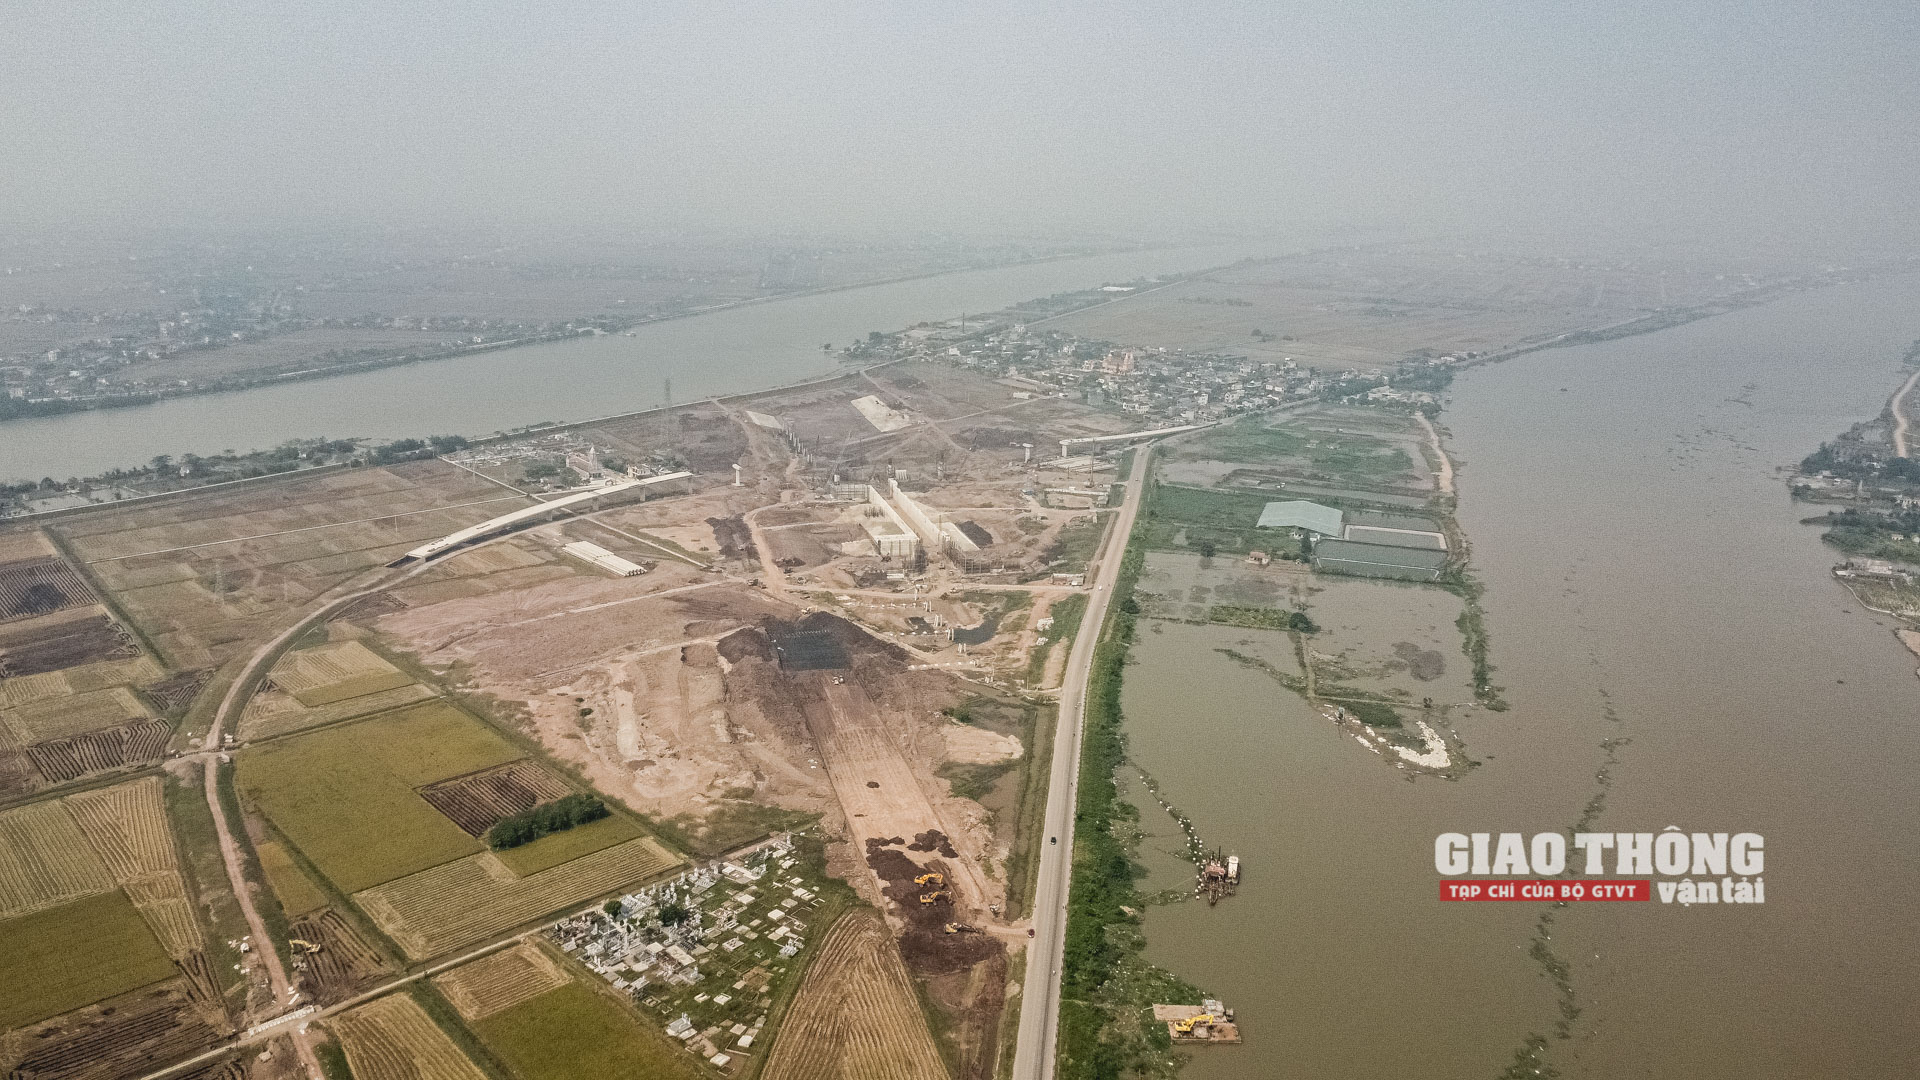 Chùm ảnh: Cụm công trình kênh nối sông Đáy - Ninh Cơ sau 1 năm thi công - Ảnh 1.